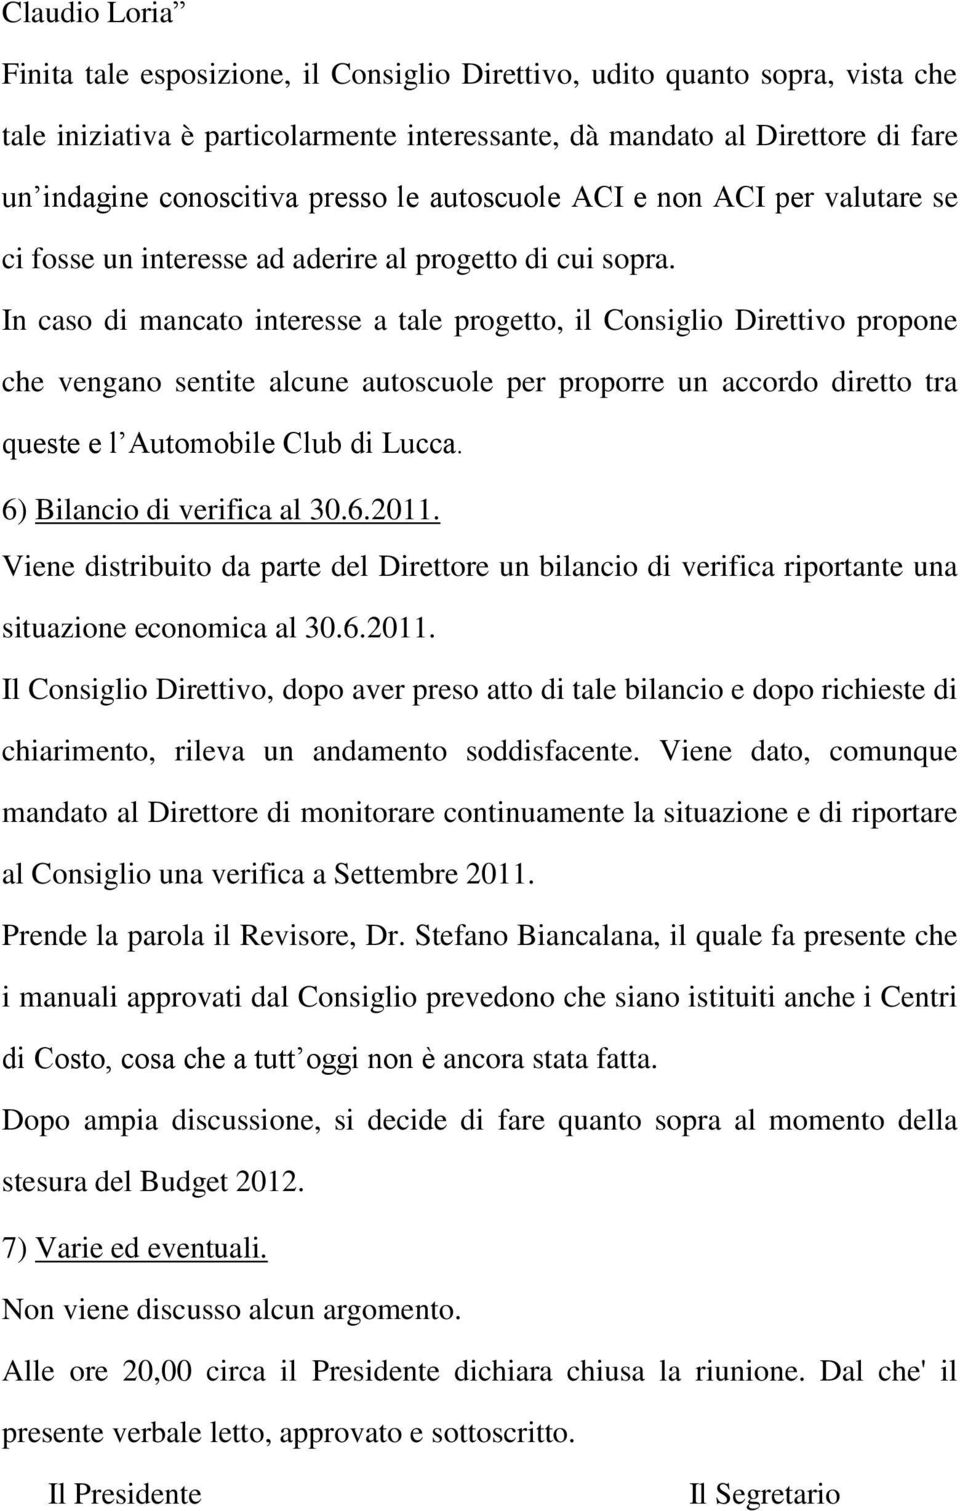 In caso di mancato interesse a tale progetto, il Consiglio Direttivo propone che vengano sentite alcune autoscuole per proporre un accordo diretto tra queste e l Automobile Club di Lucca.